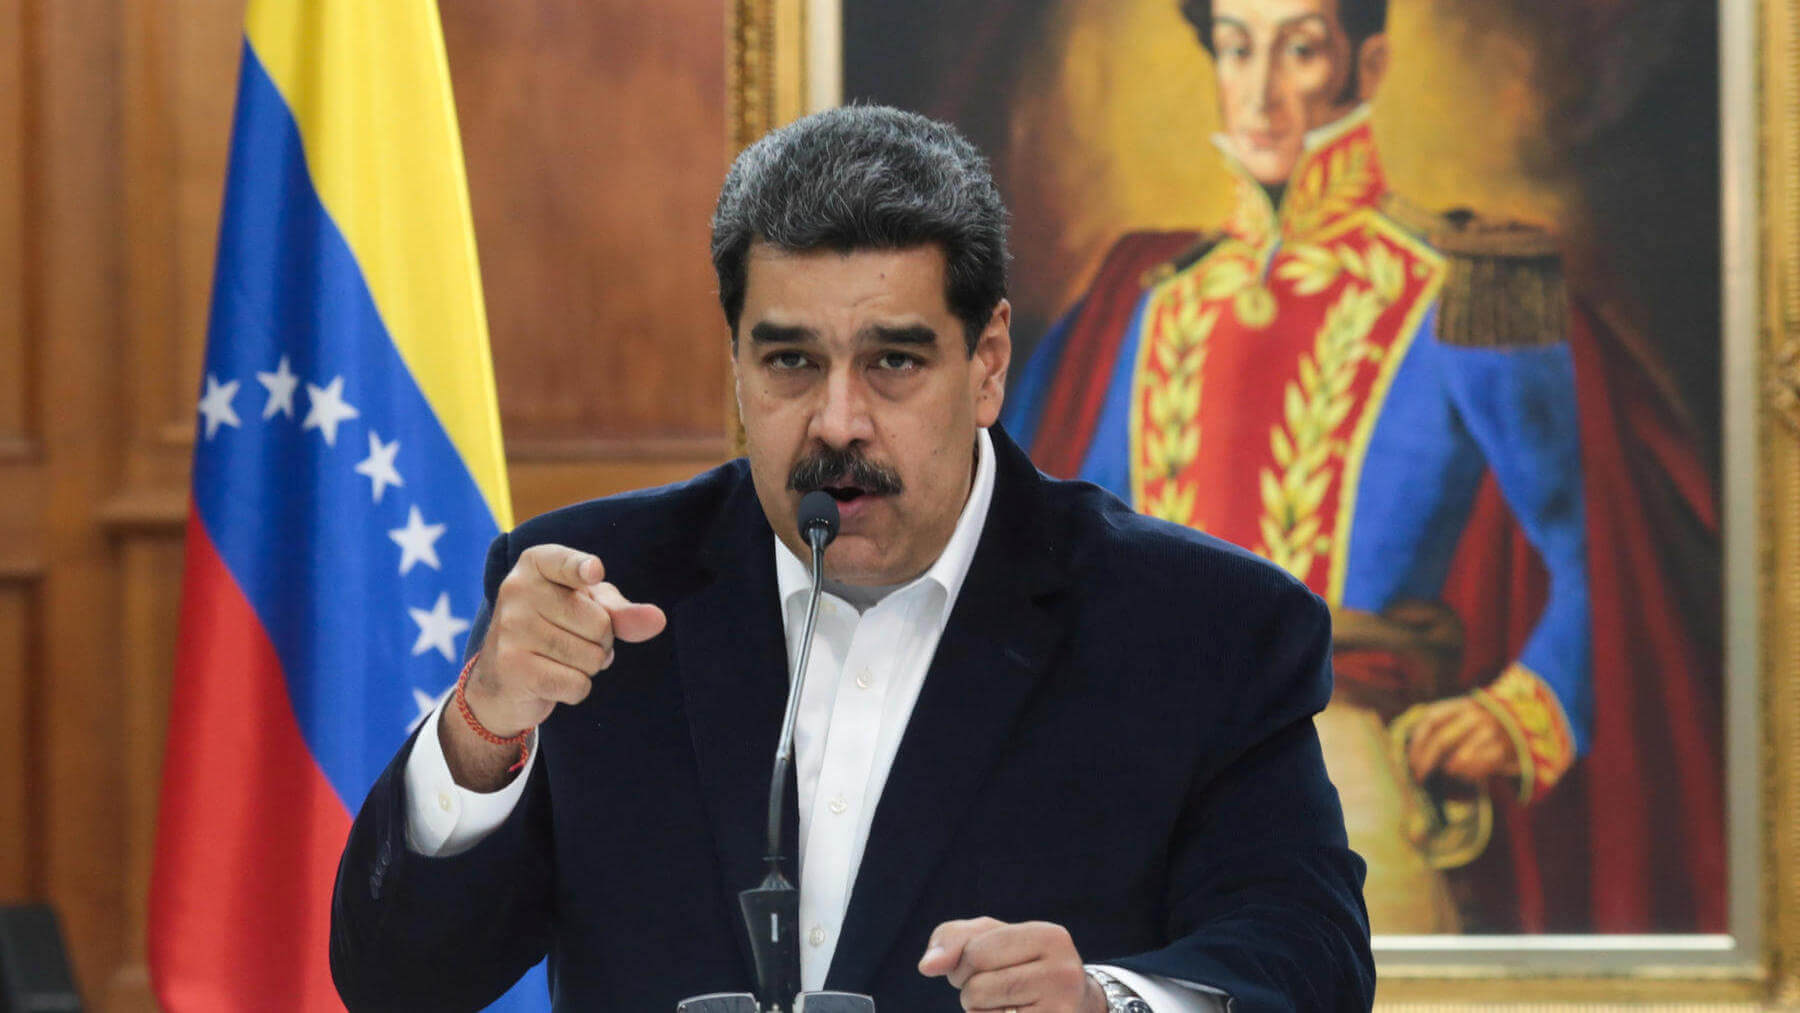 Oil Explosion at Venezuelan Refinery, President Maduro Alleges “Terrorist Attack”